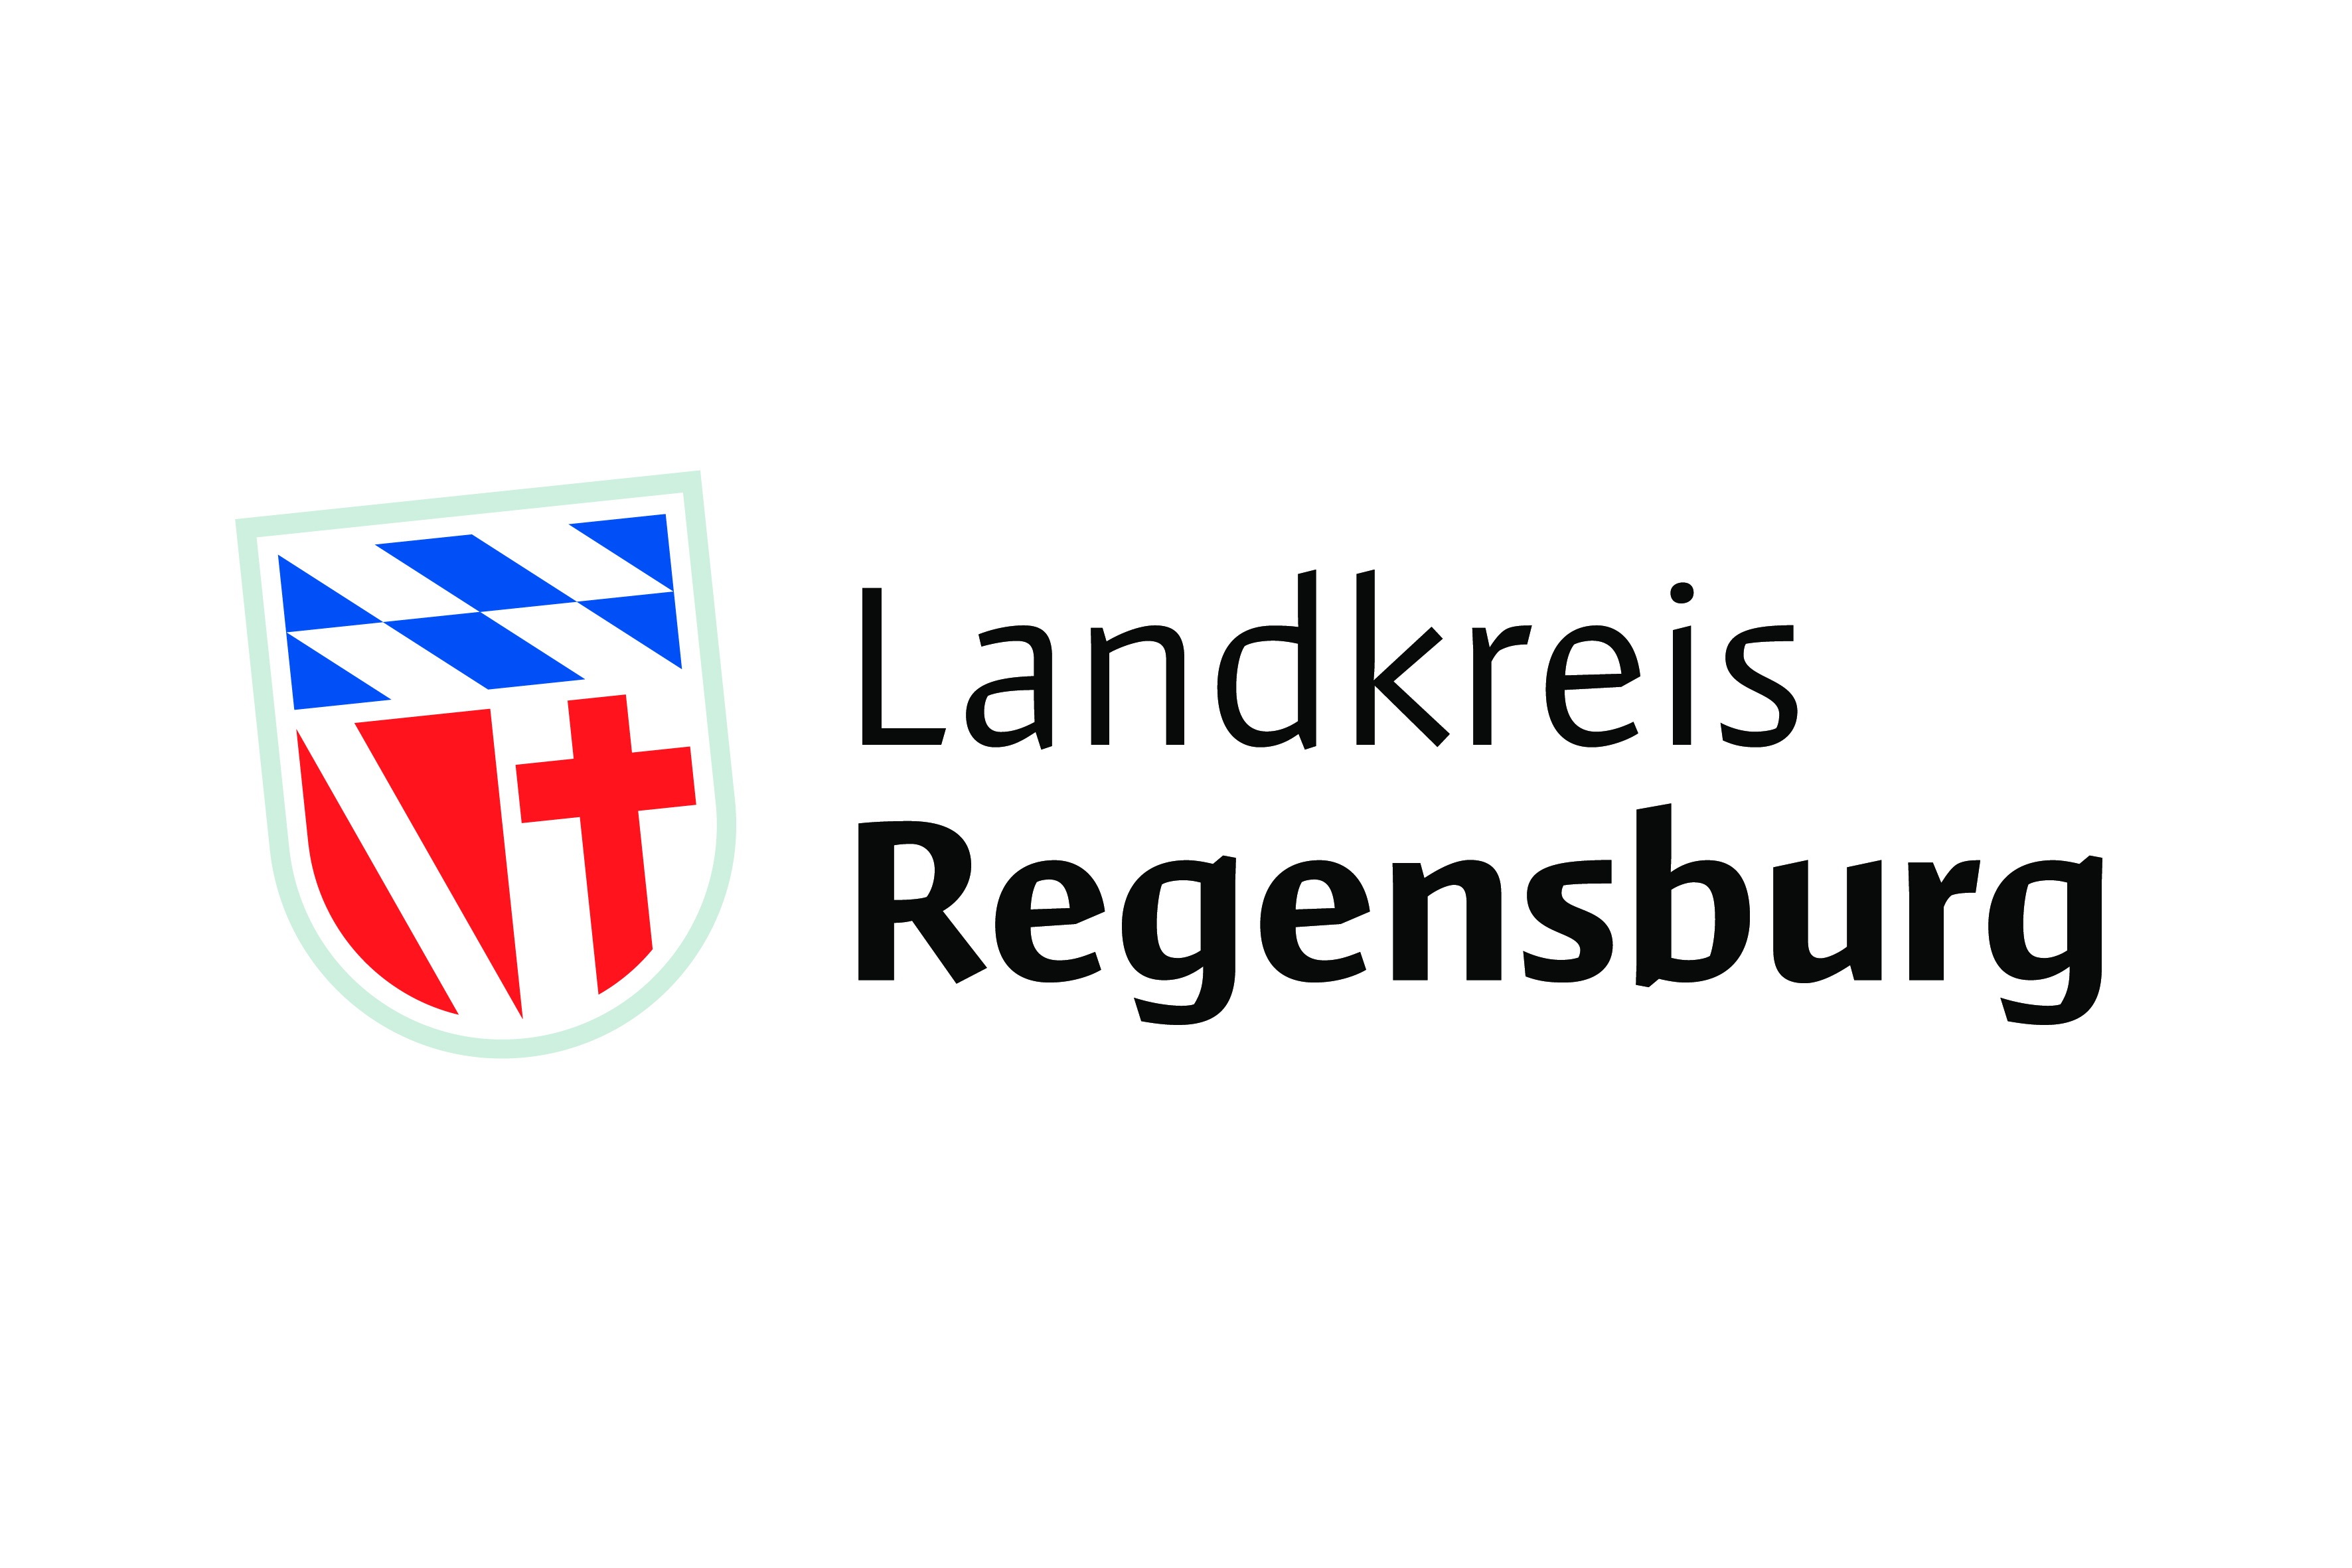 Bild zeigt das Logo des Landkreises Regensburg